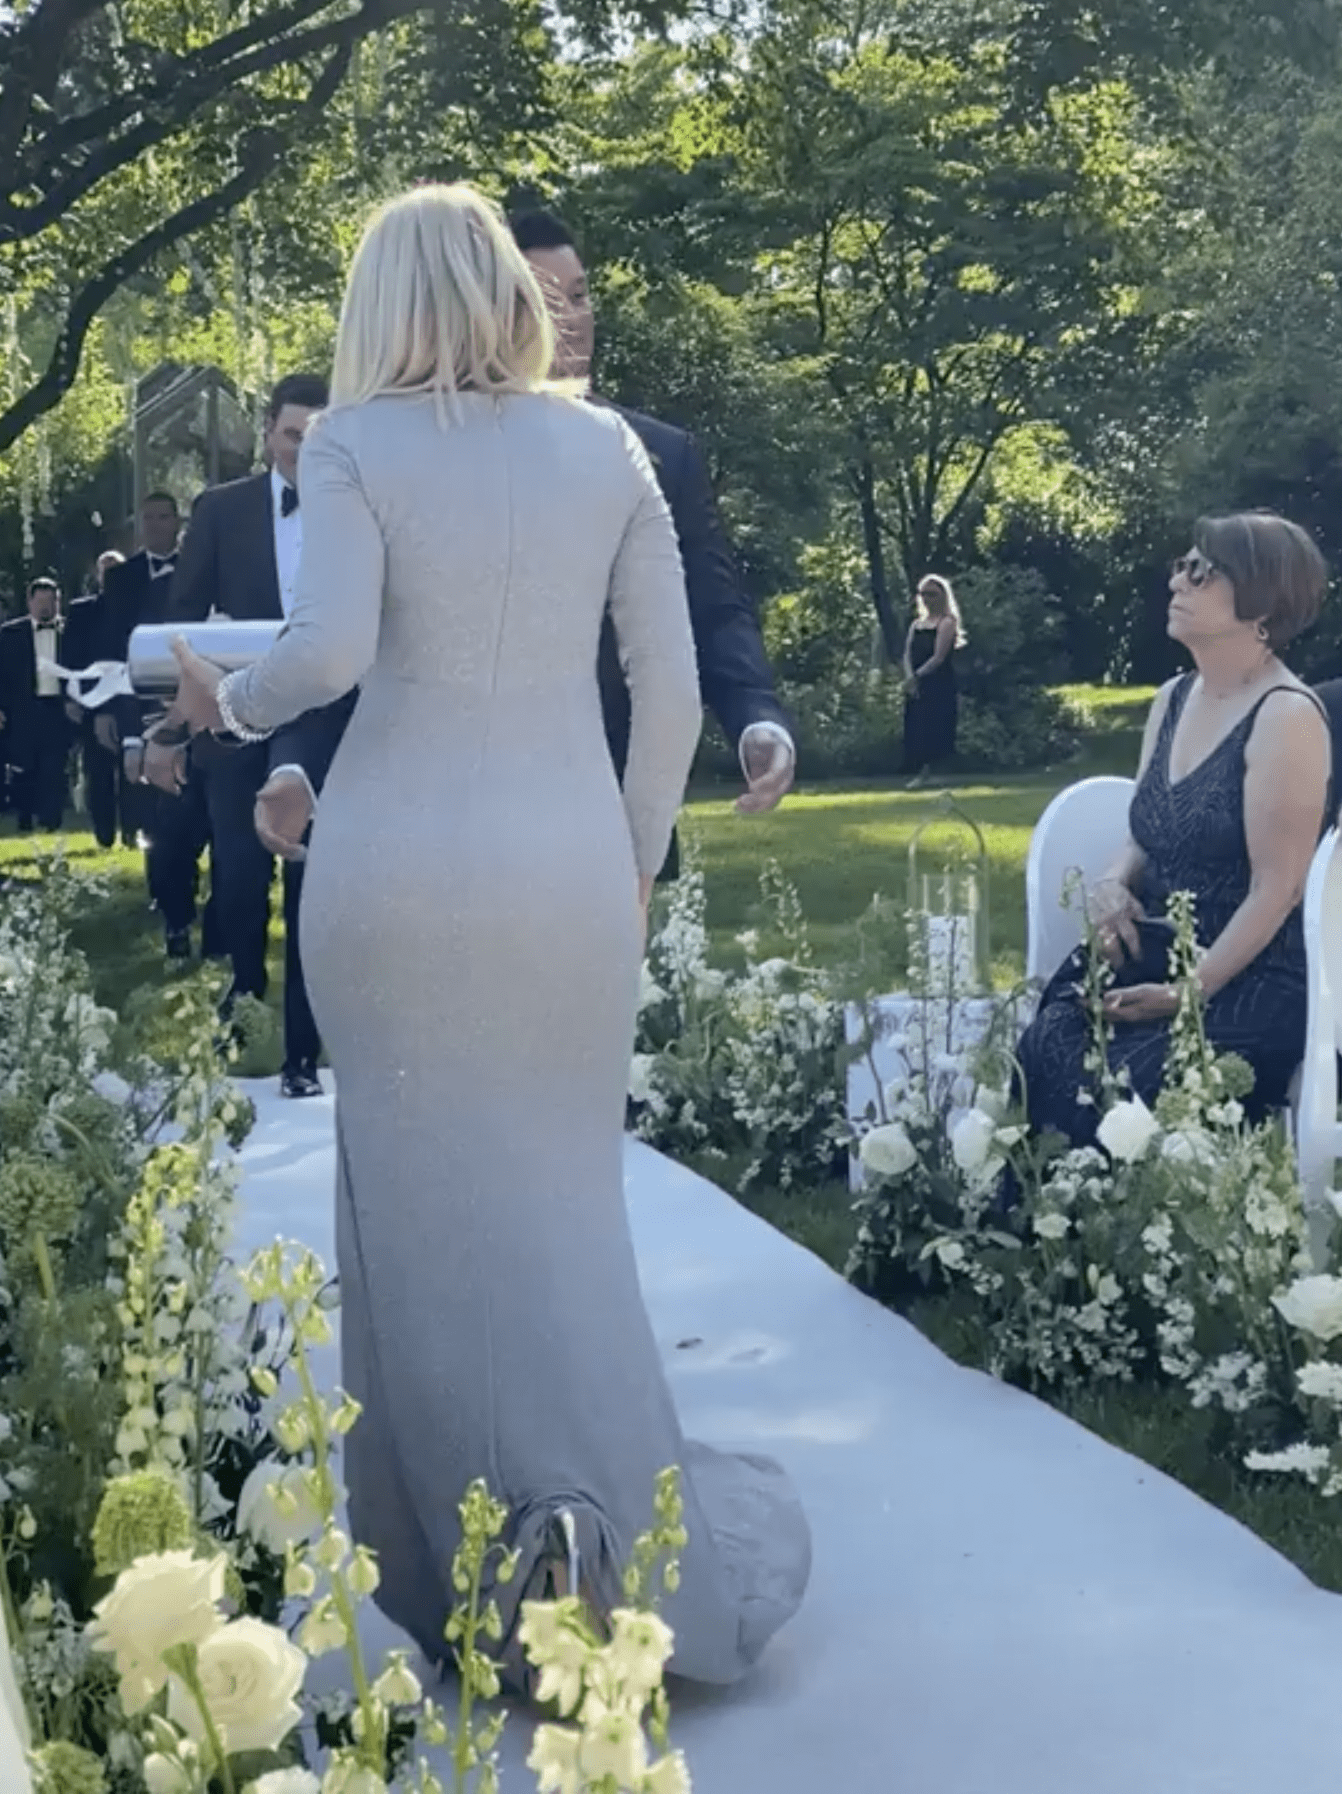 Eine Frau in einem cremefarbenen Kleid geht den Gang entlang, während der Bräutigam an ihr vorbeigeht. | Quelle: reddit.com/r/weddingshaming